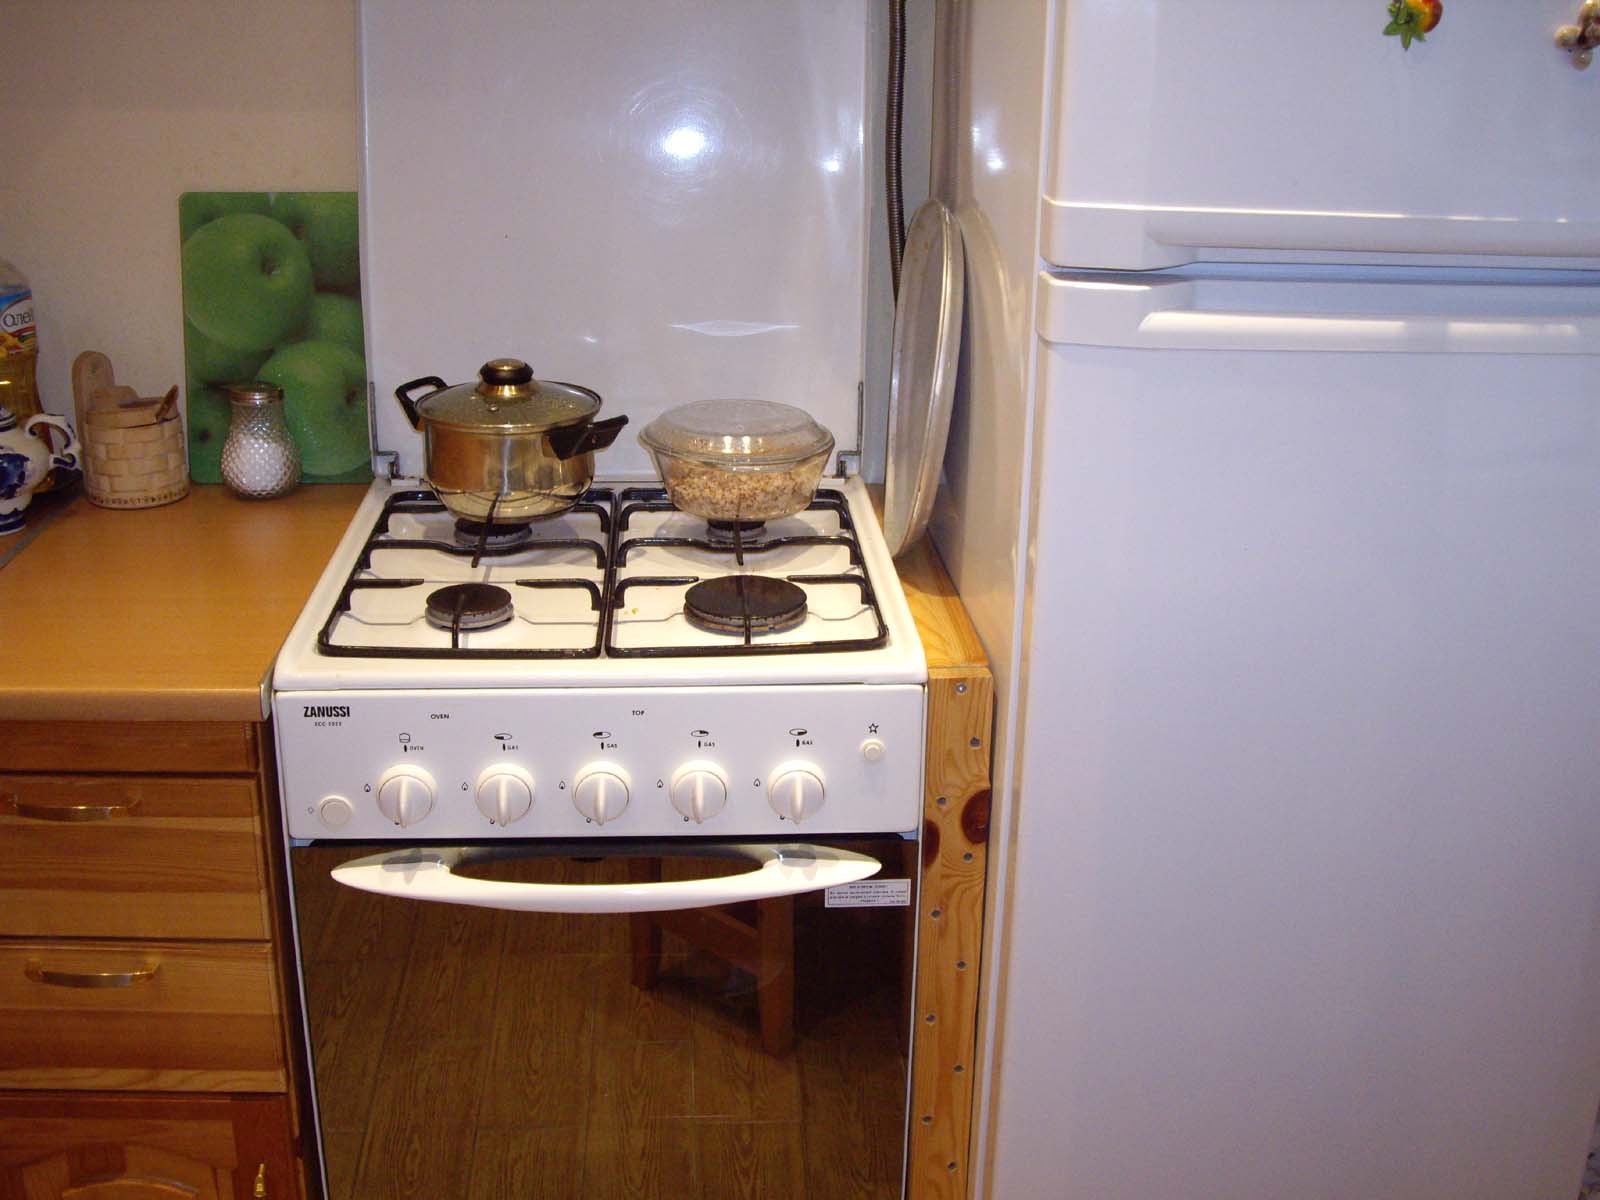 Холодильник рядом с плитой: какое расстояние должно быть между ними